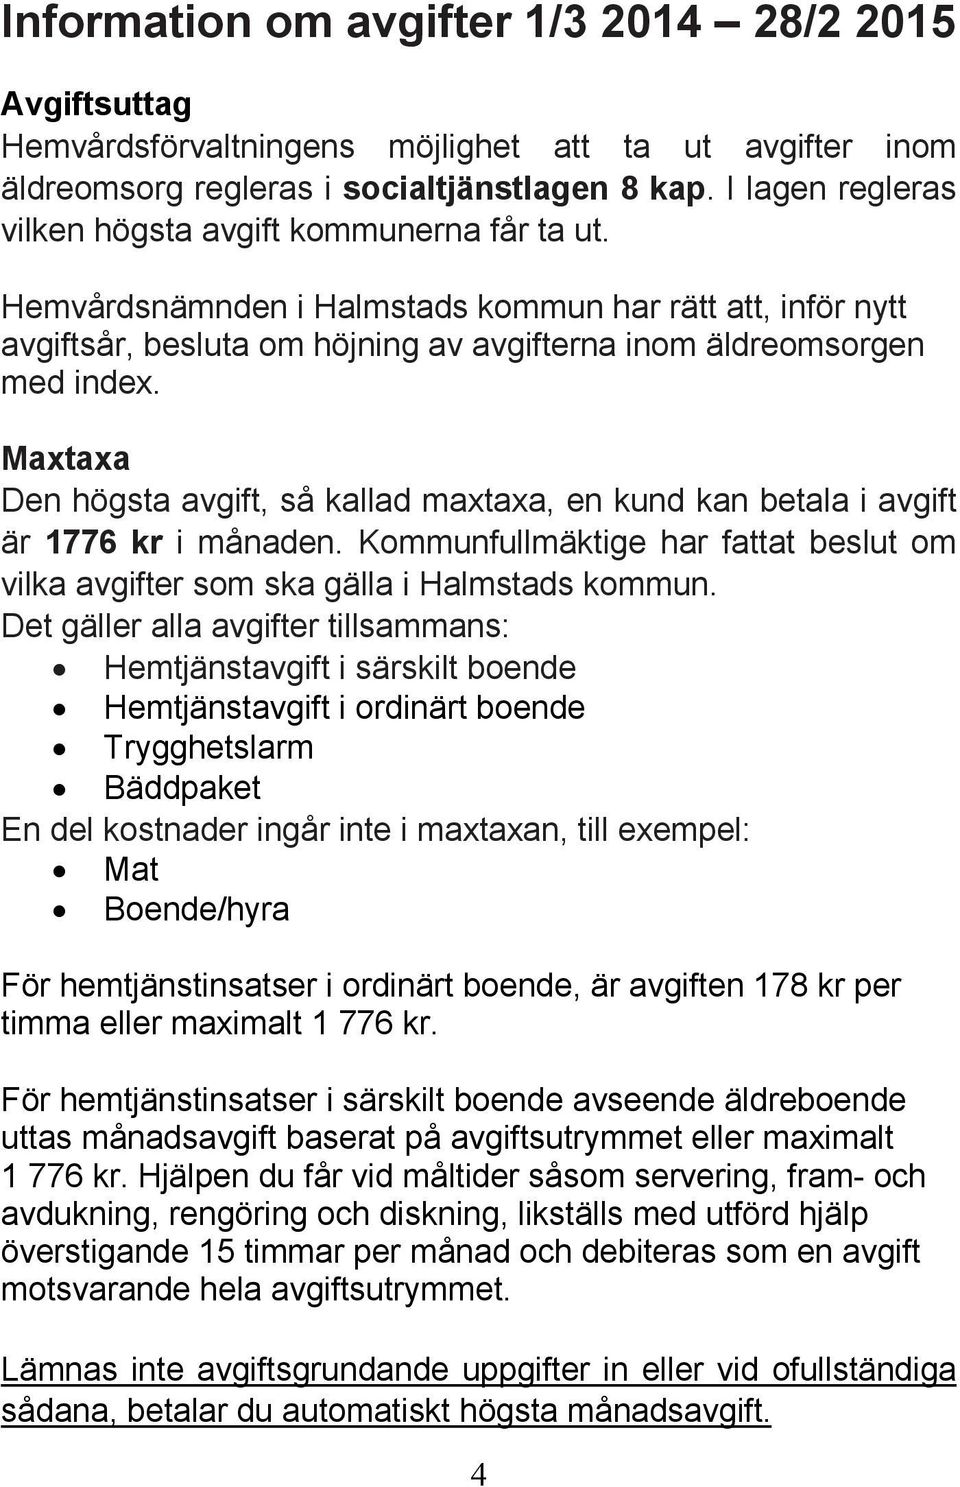 Maxtaxa Den högsta avgift, så kallad maxtaxa, en kund kan betala i avgift är 1776 kr i månaden. Kommunfullmäktige har fattat beslut om vilka avgifter som ska gälla i Halmstads kommun.